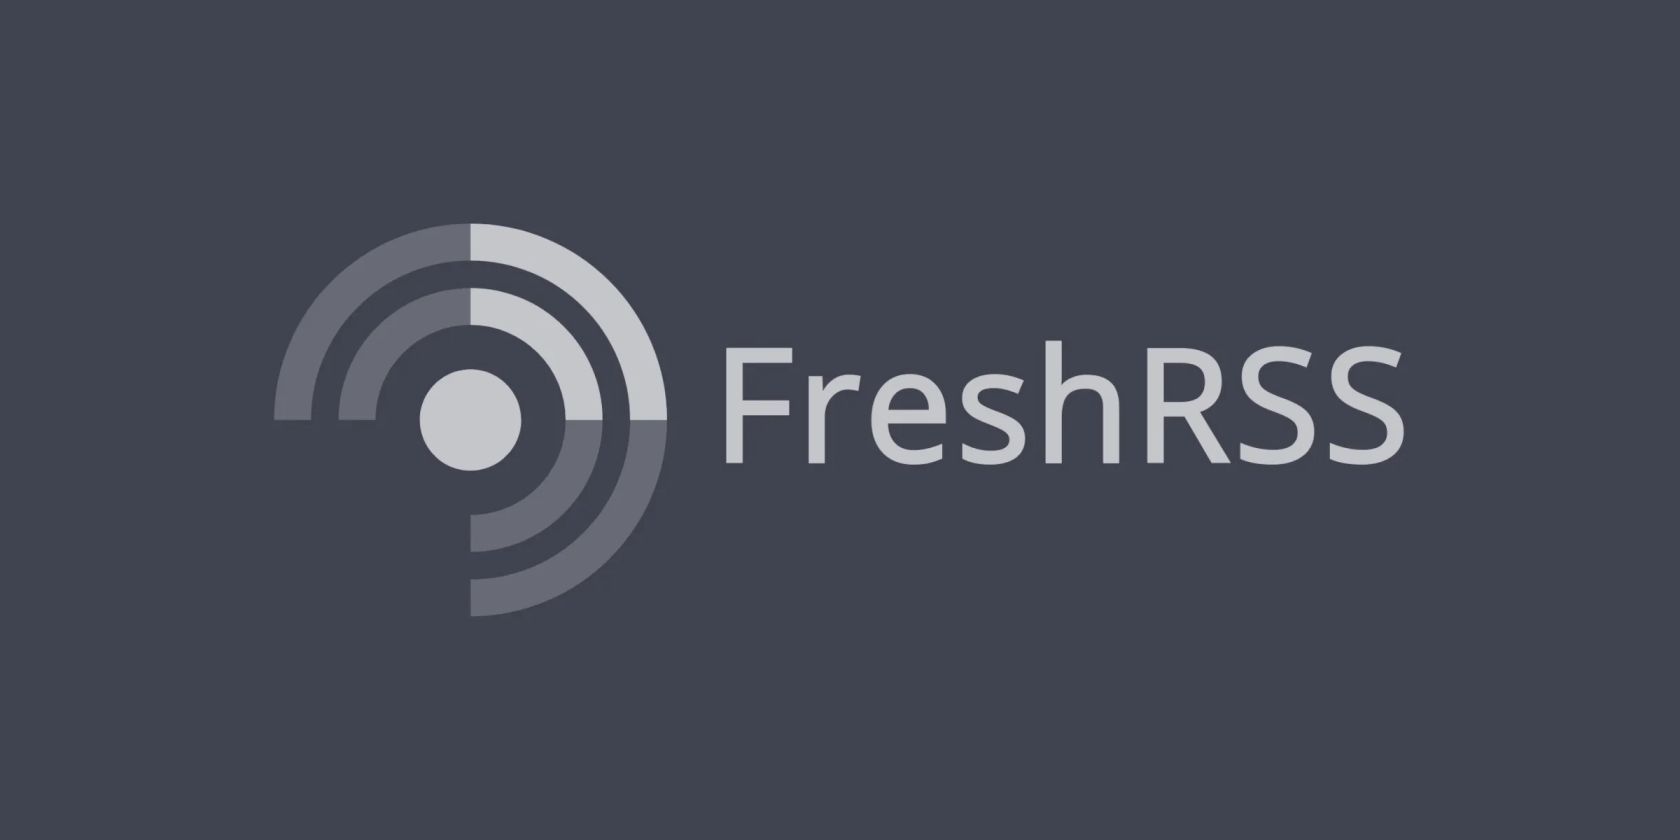 FreshRSS logo on a gray background